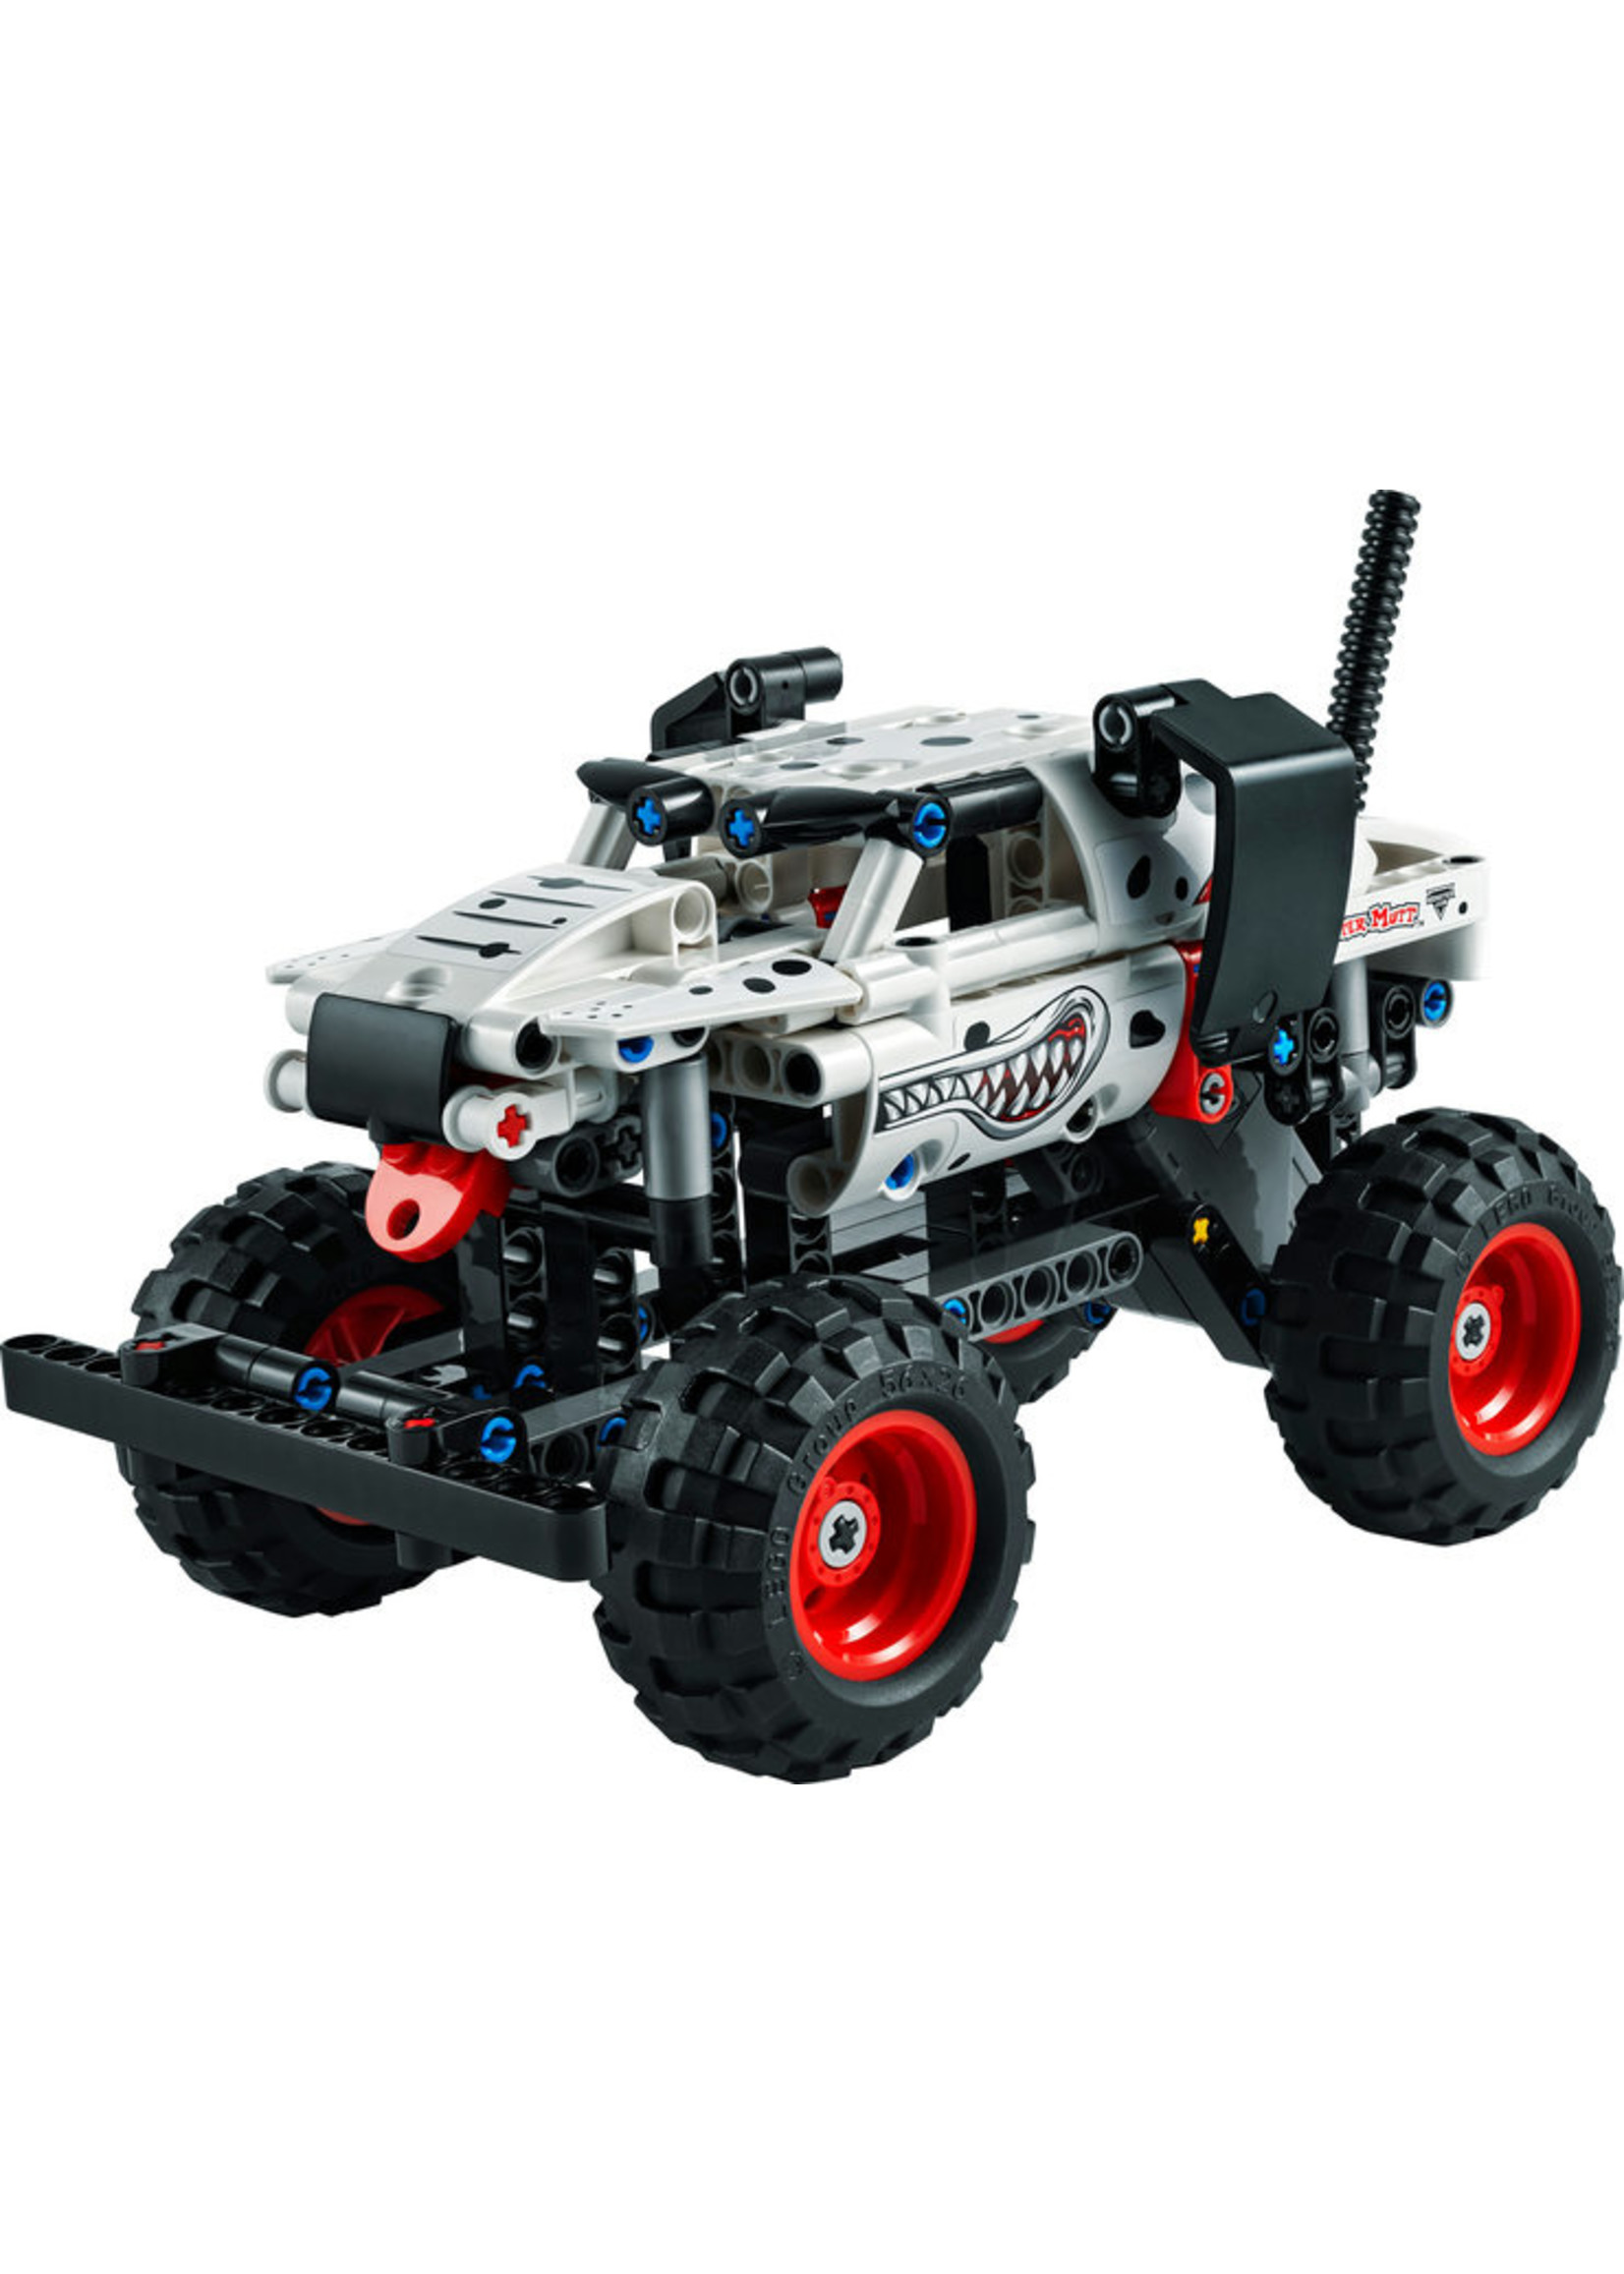 LEGO 42150 - Monster Jam Monster Mutt